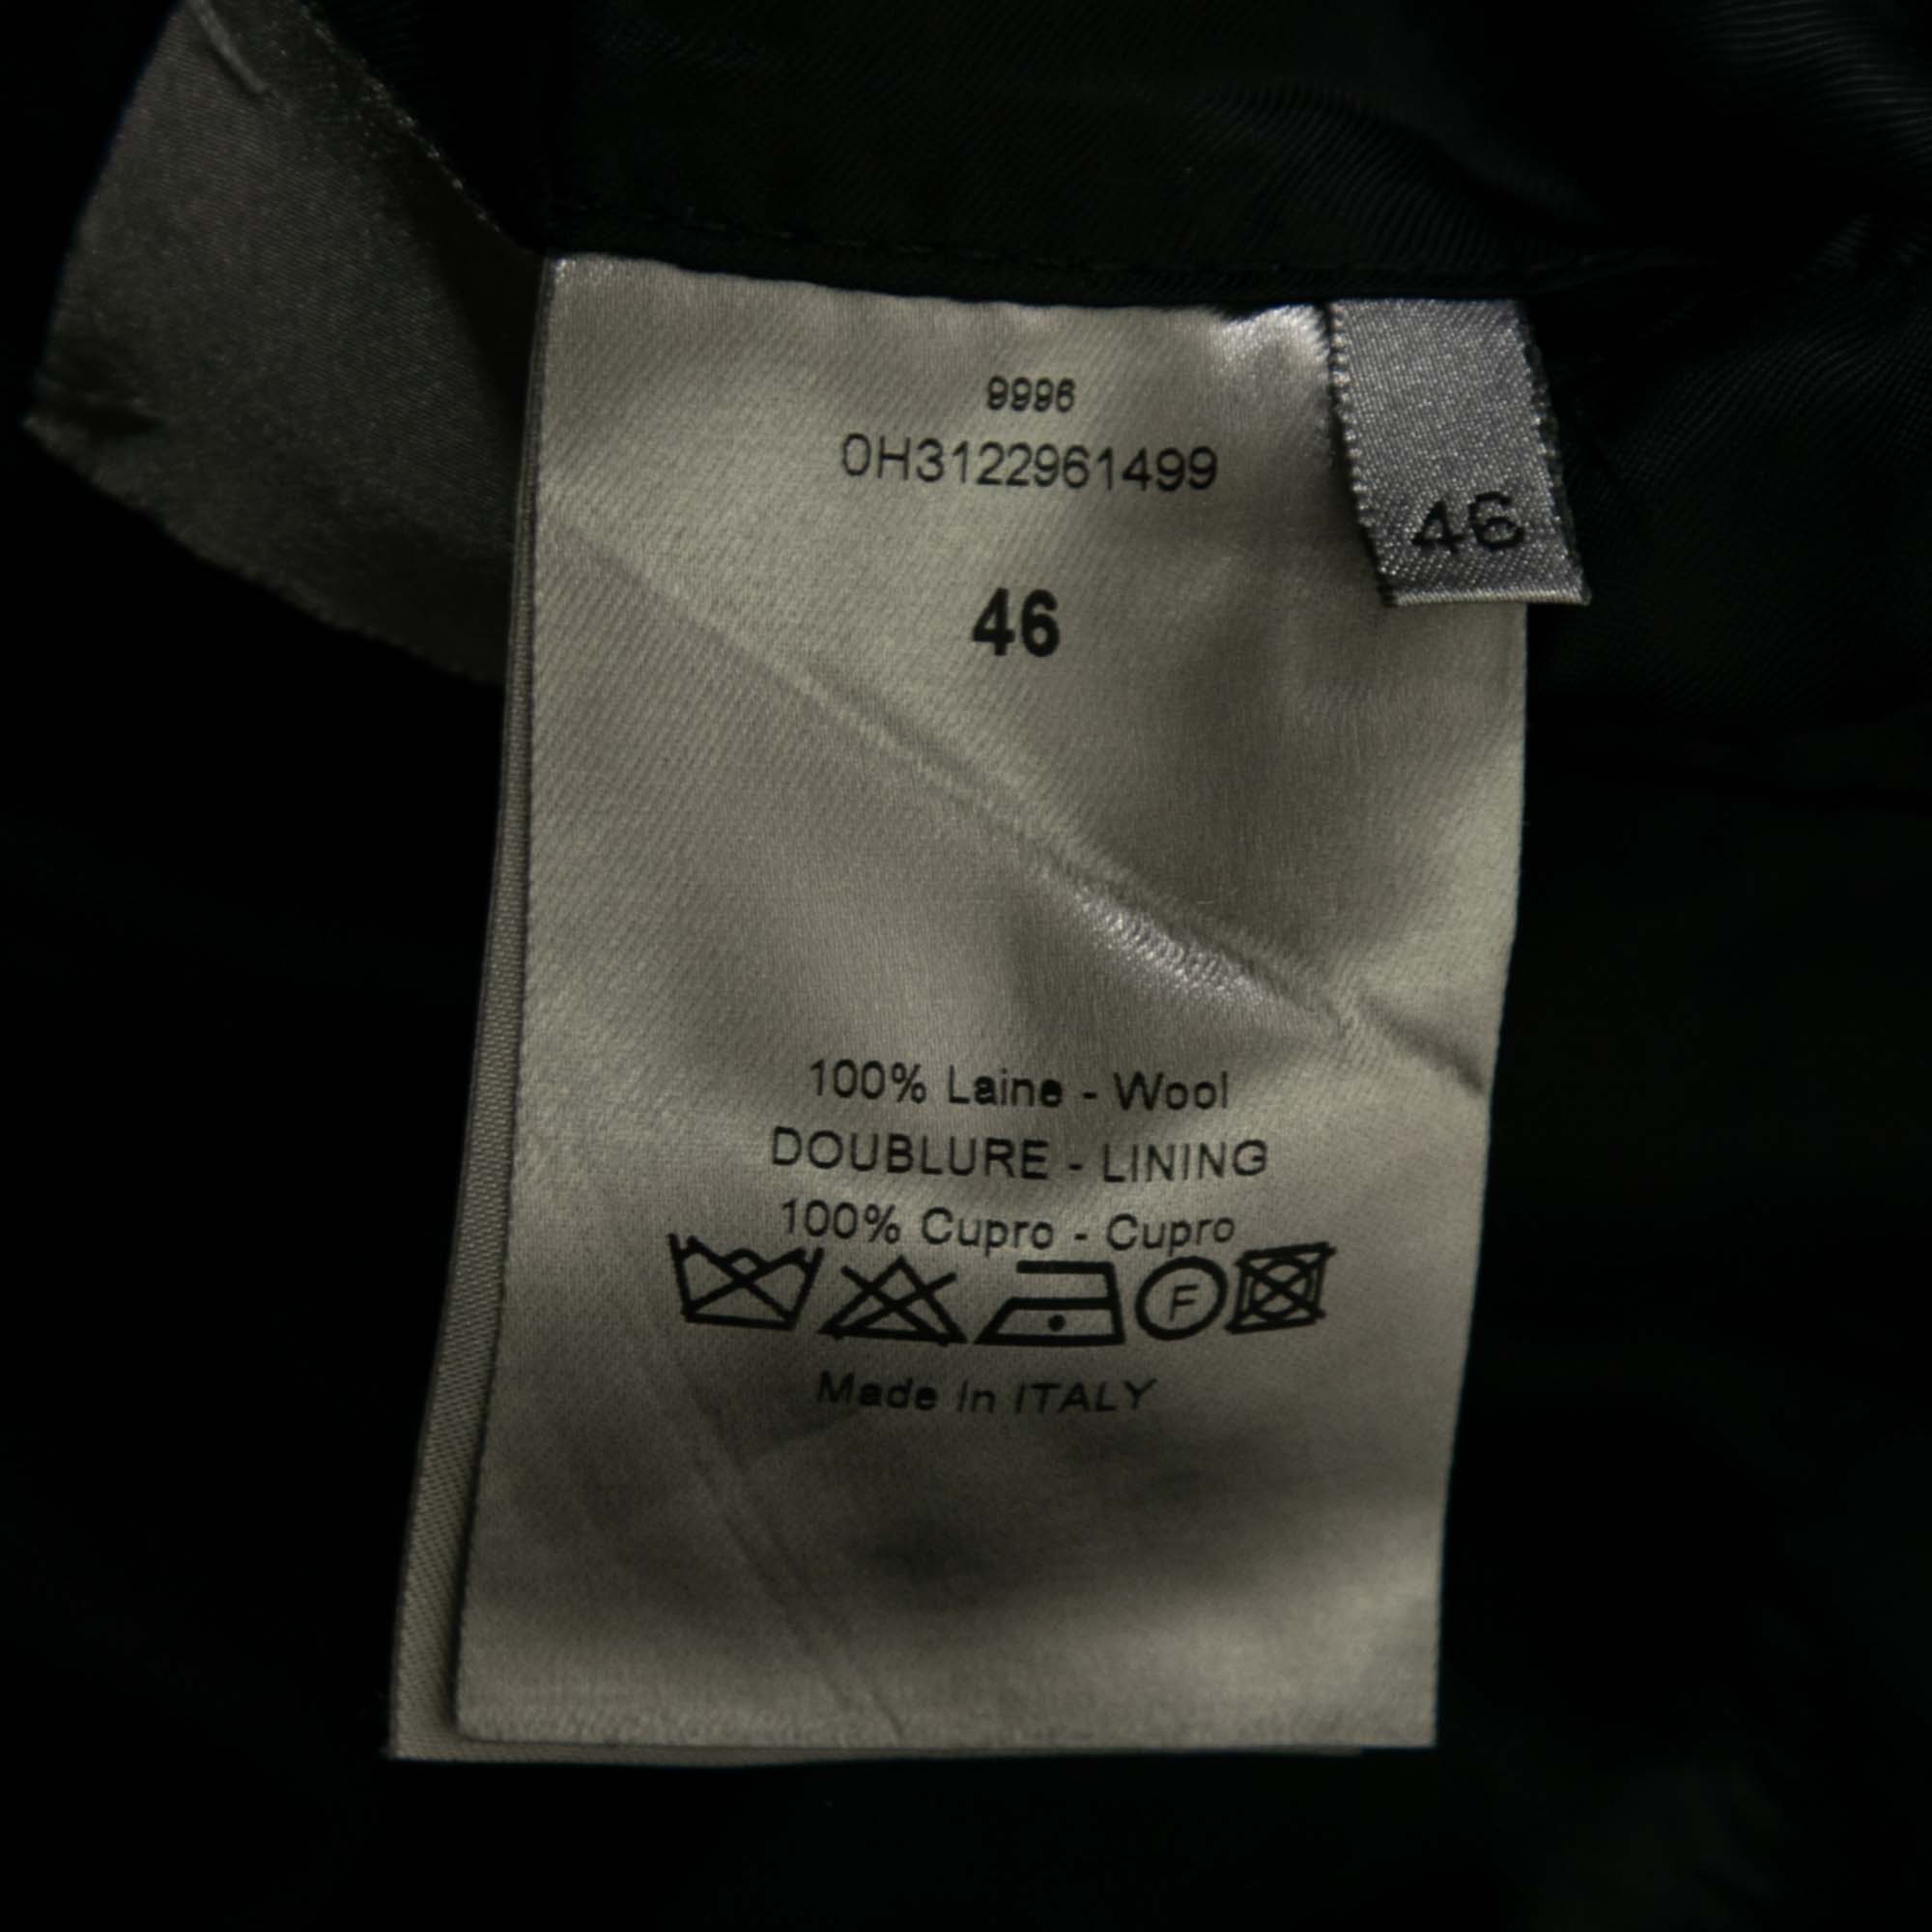 Dior Black Wool Long Sleeve Blazer XL